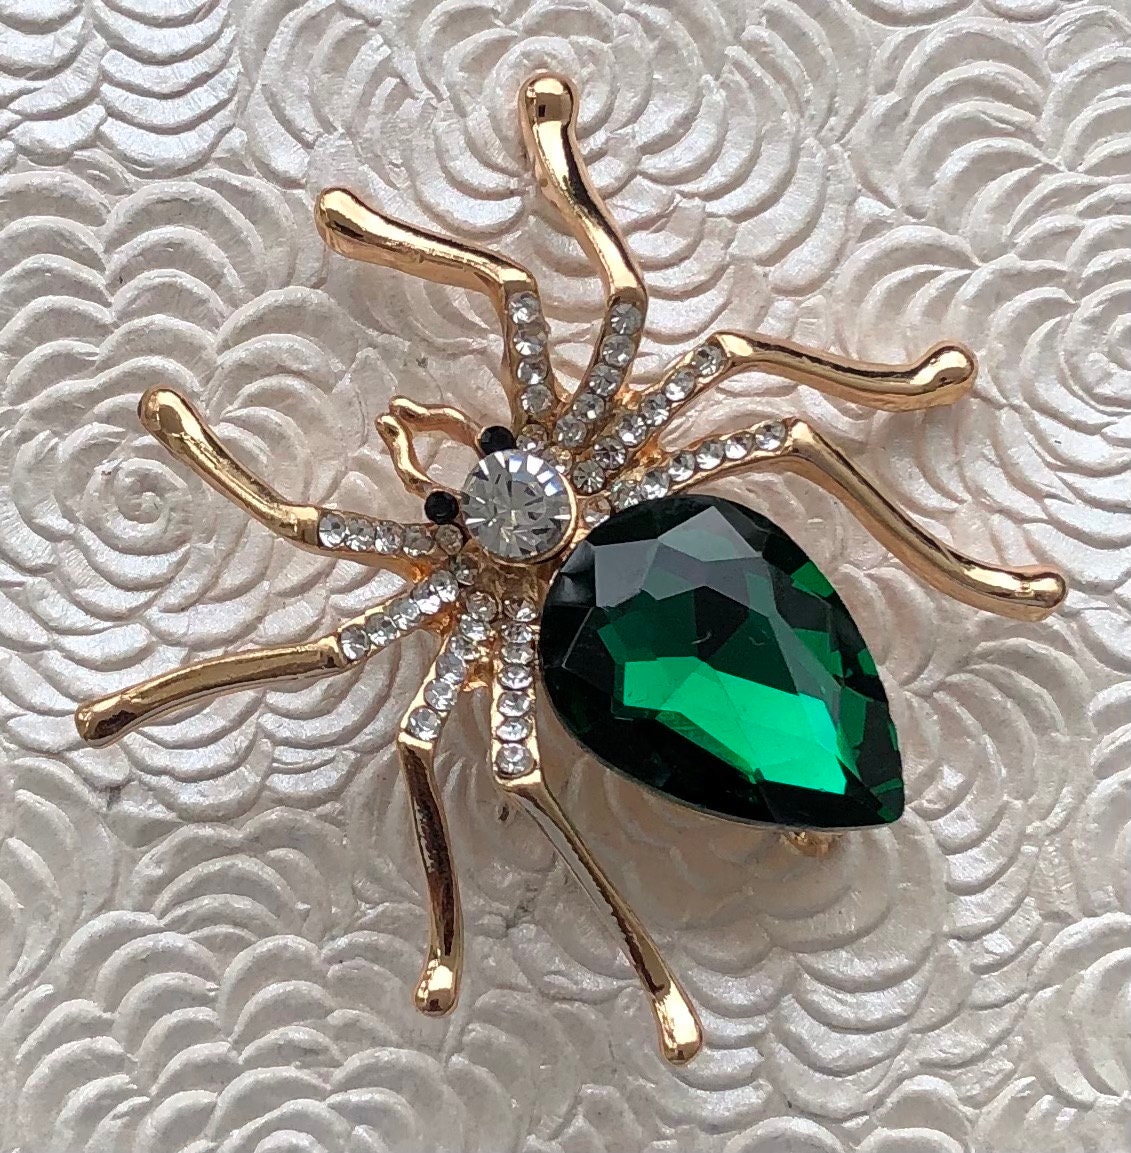 Unique Vintage Style Spider Brooch 